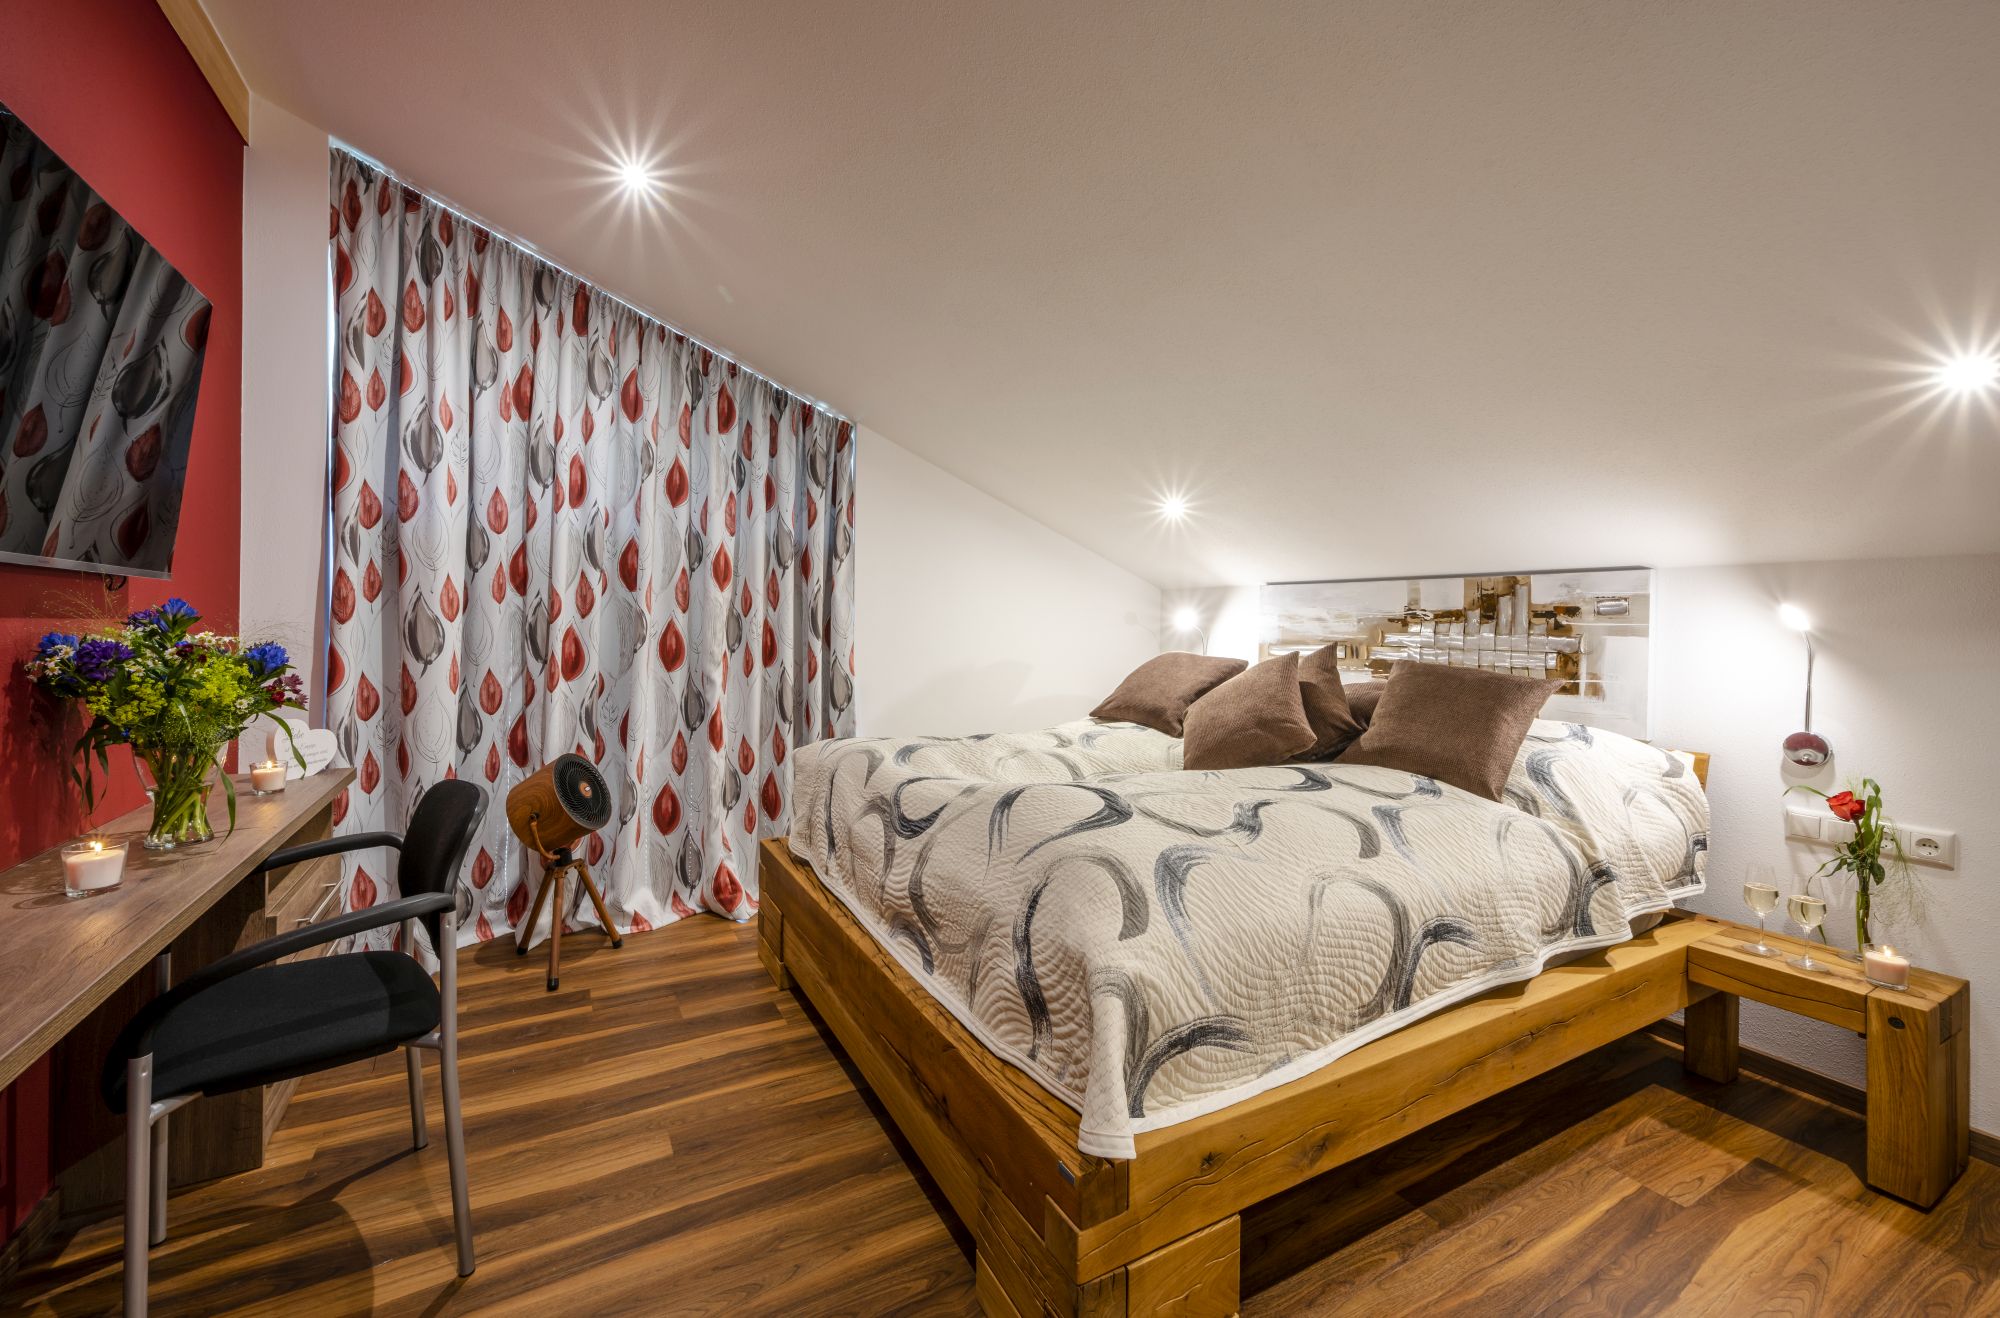 7 Nächte in der 5 Sterne Luxus-Suite Berchtesgadener Hochthron